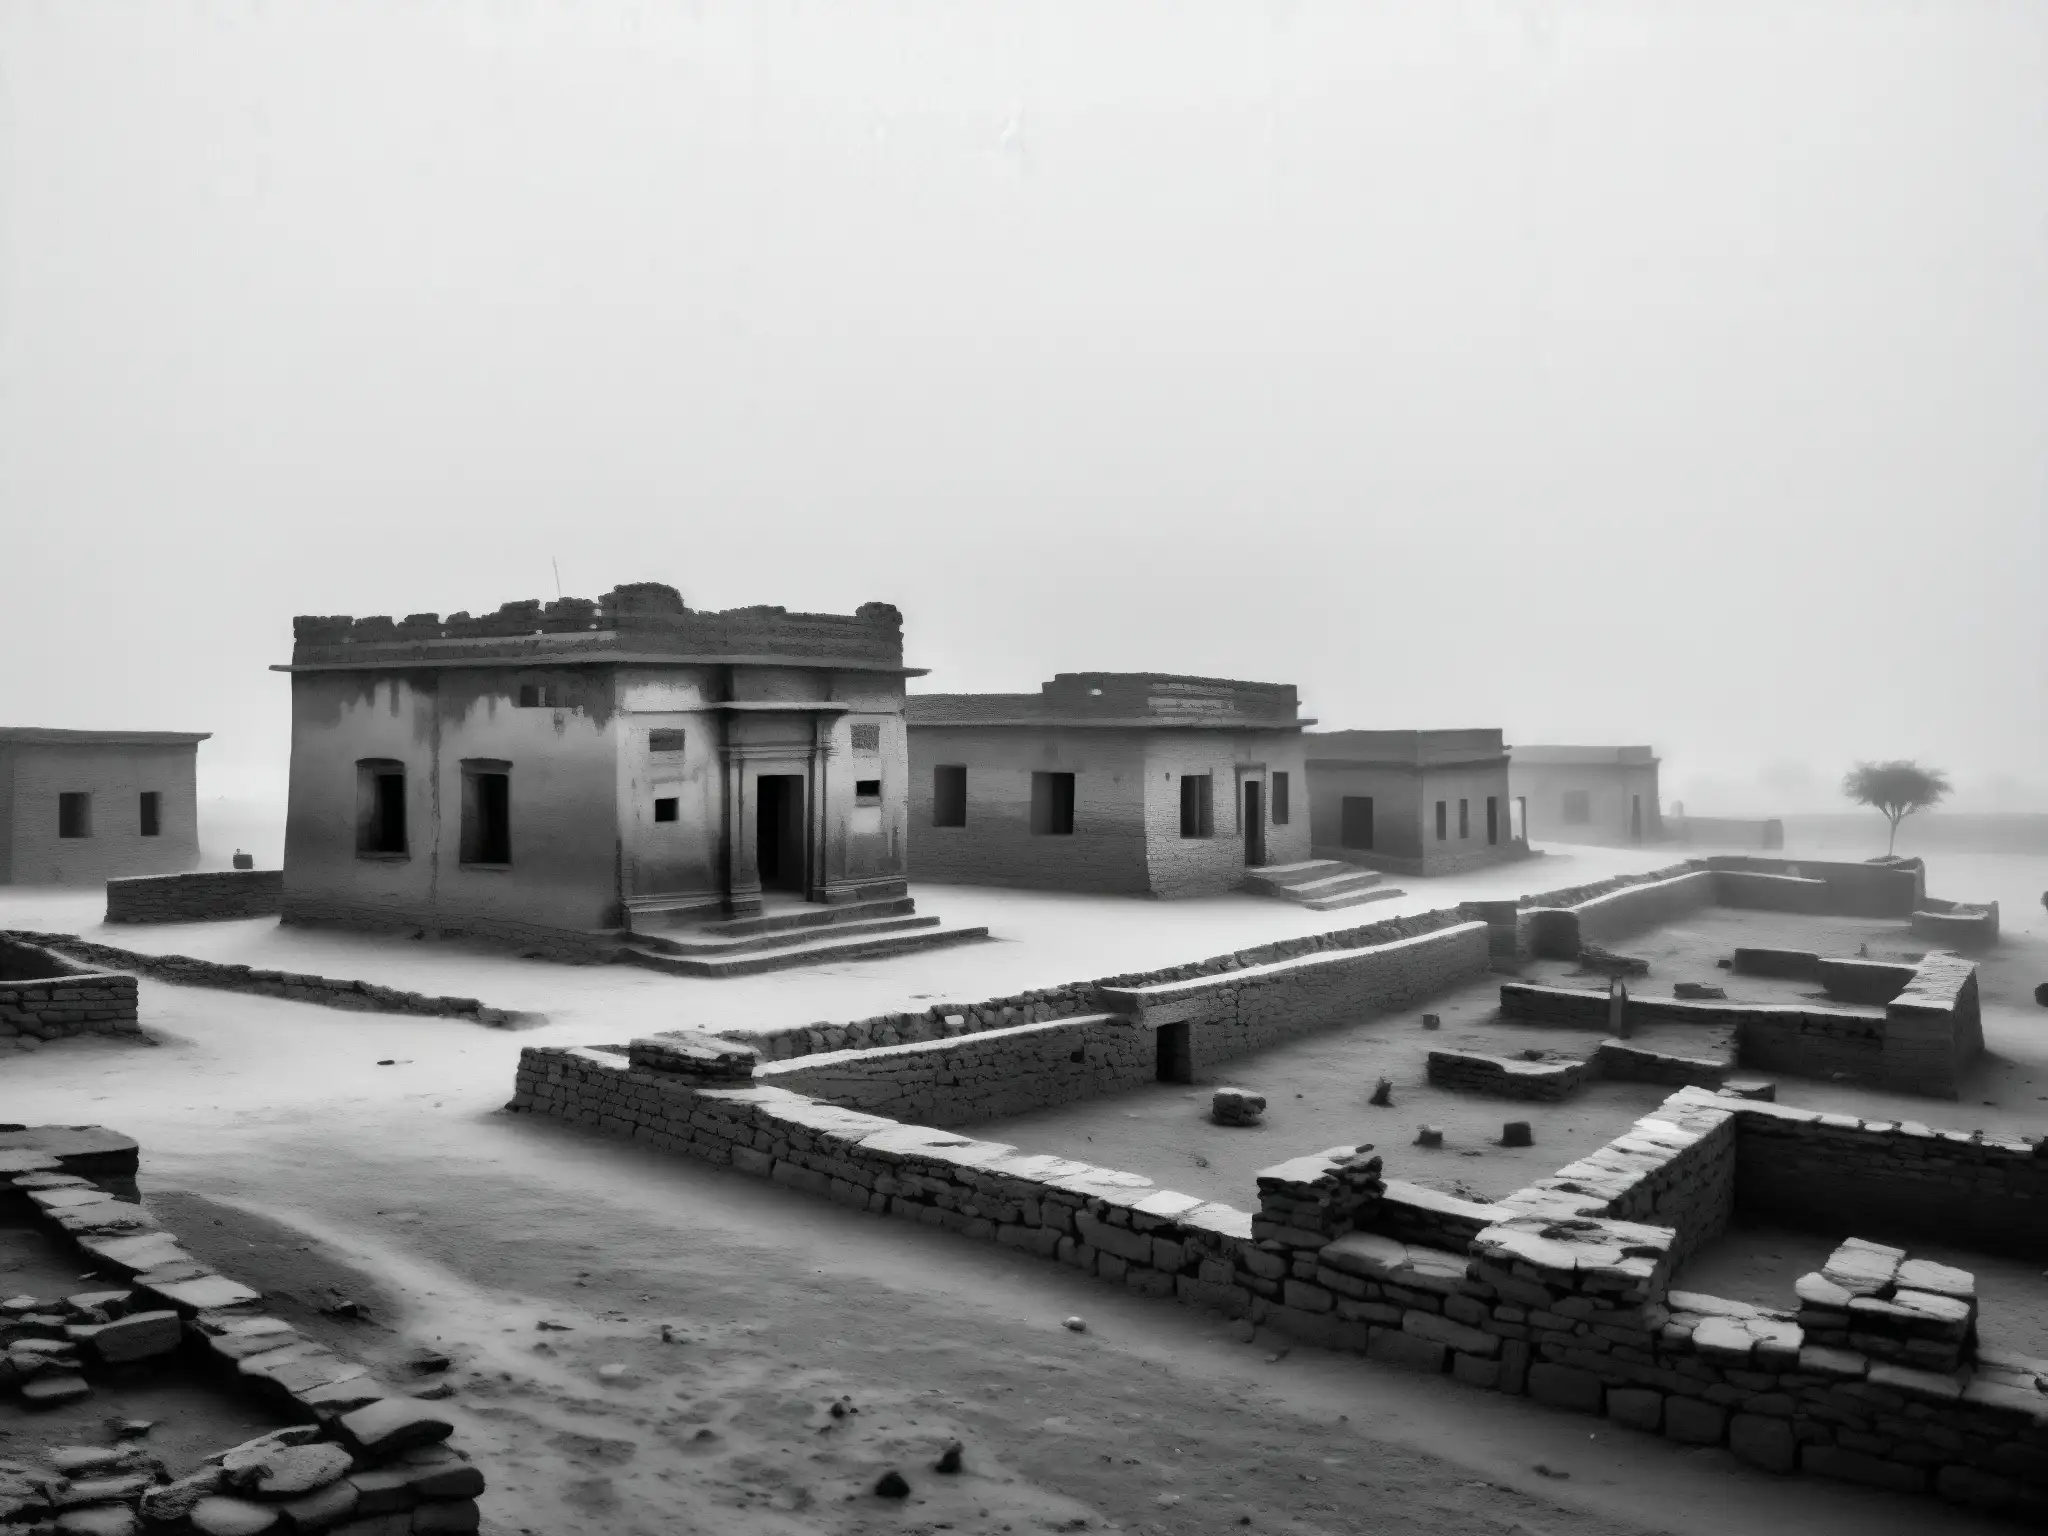 Imagen en blanco y negro de la desolada aldea de Kuldhara, envuelta en niebla y misterio, capturando la maldición de Kuldhara abandonada